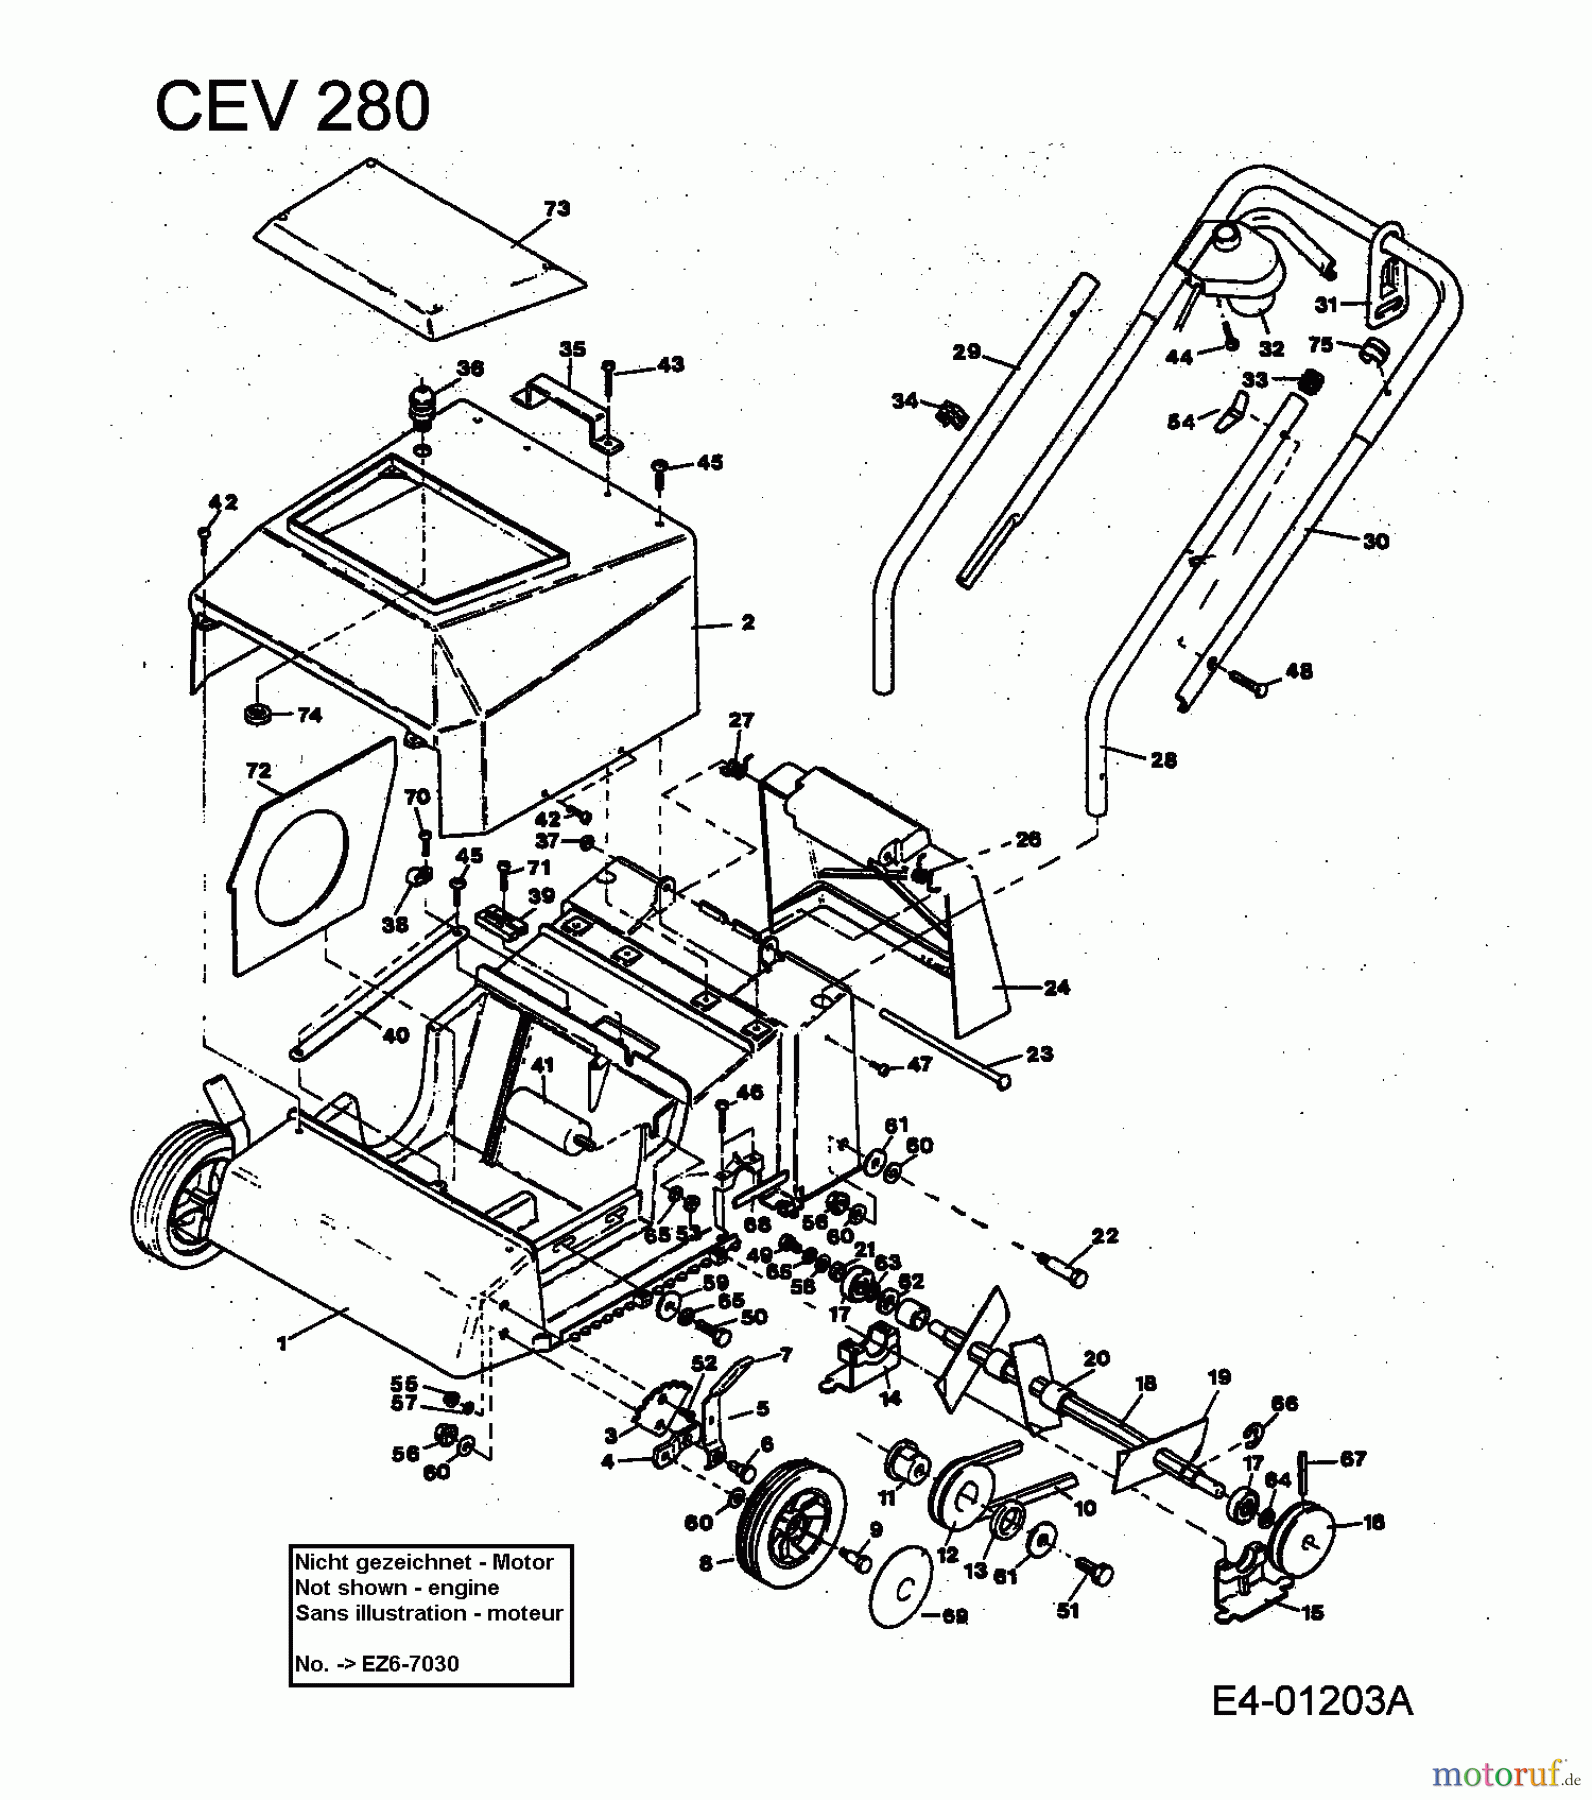  MTD Electric verticutter CEV 280 905E355P001  (1994) Basic machine